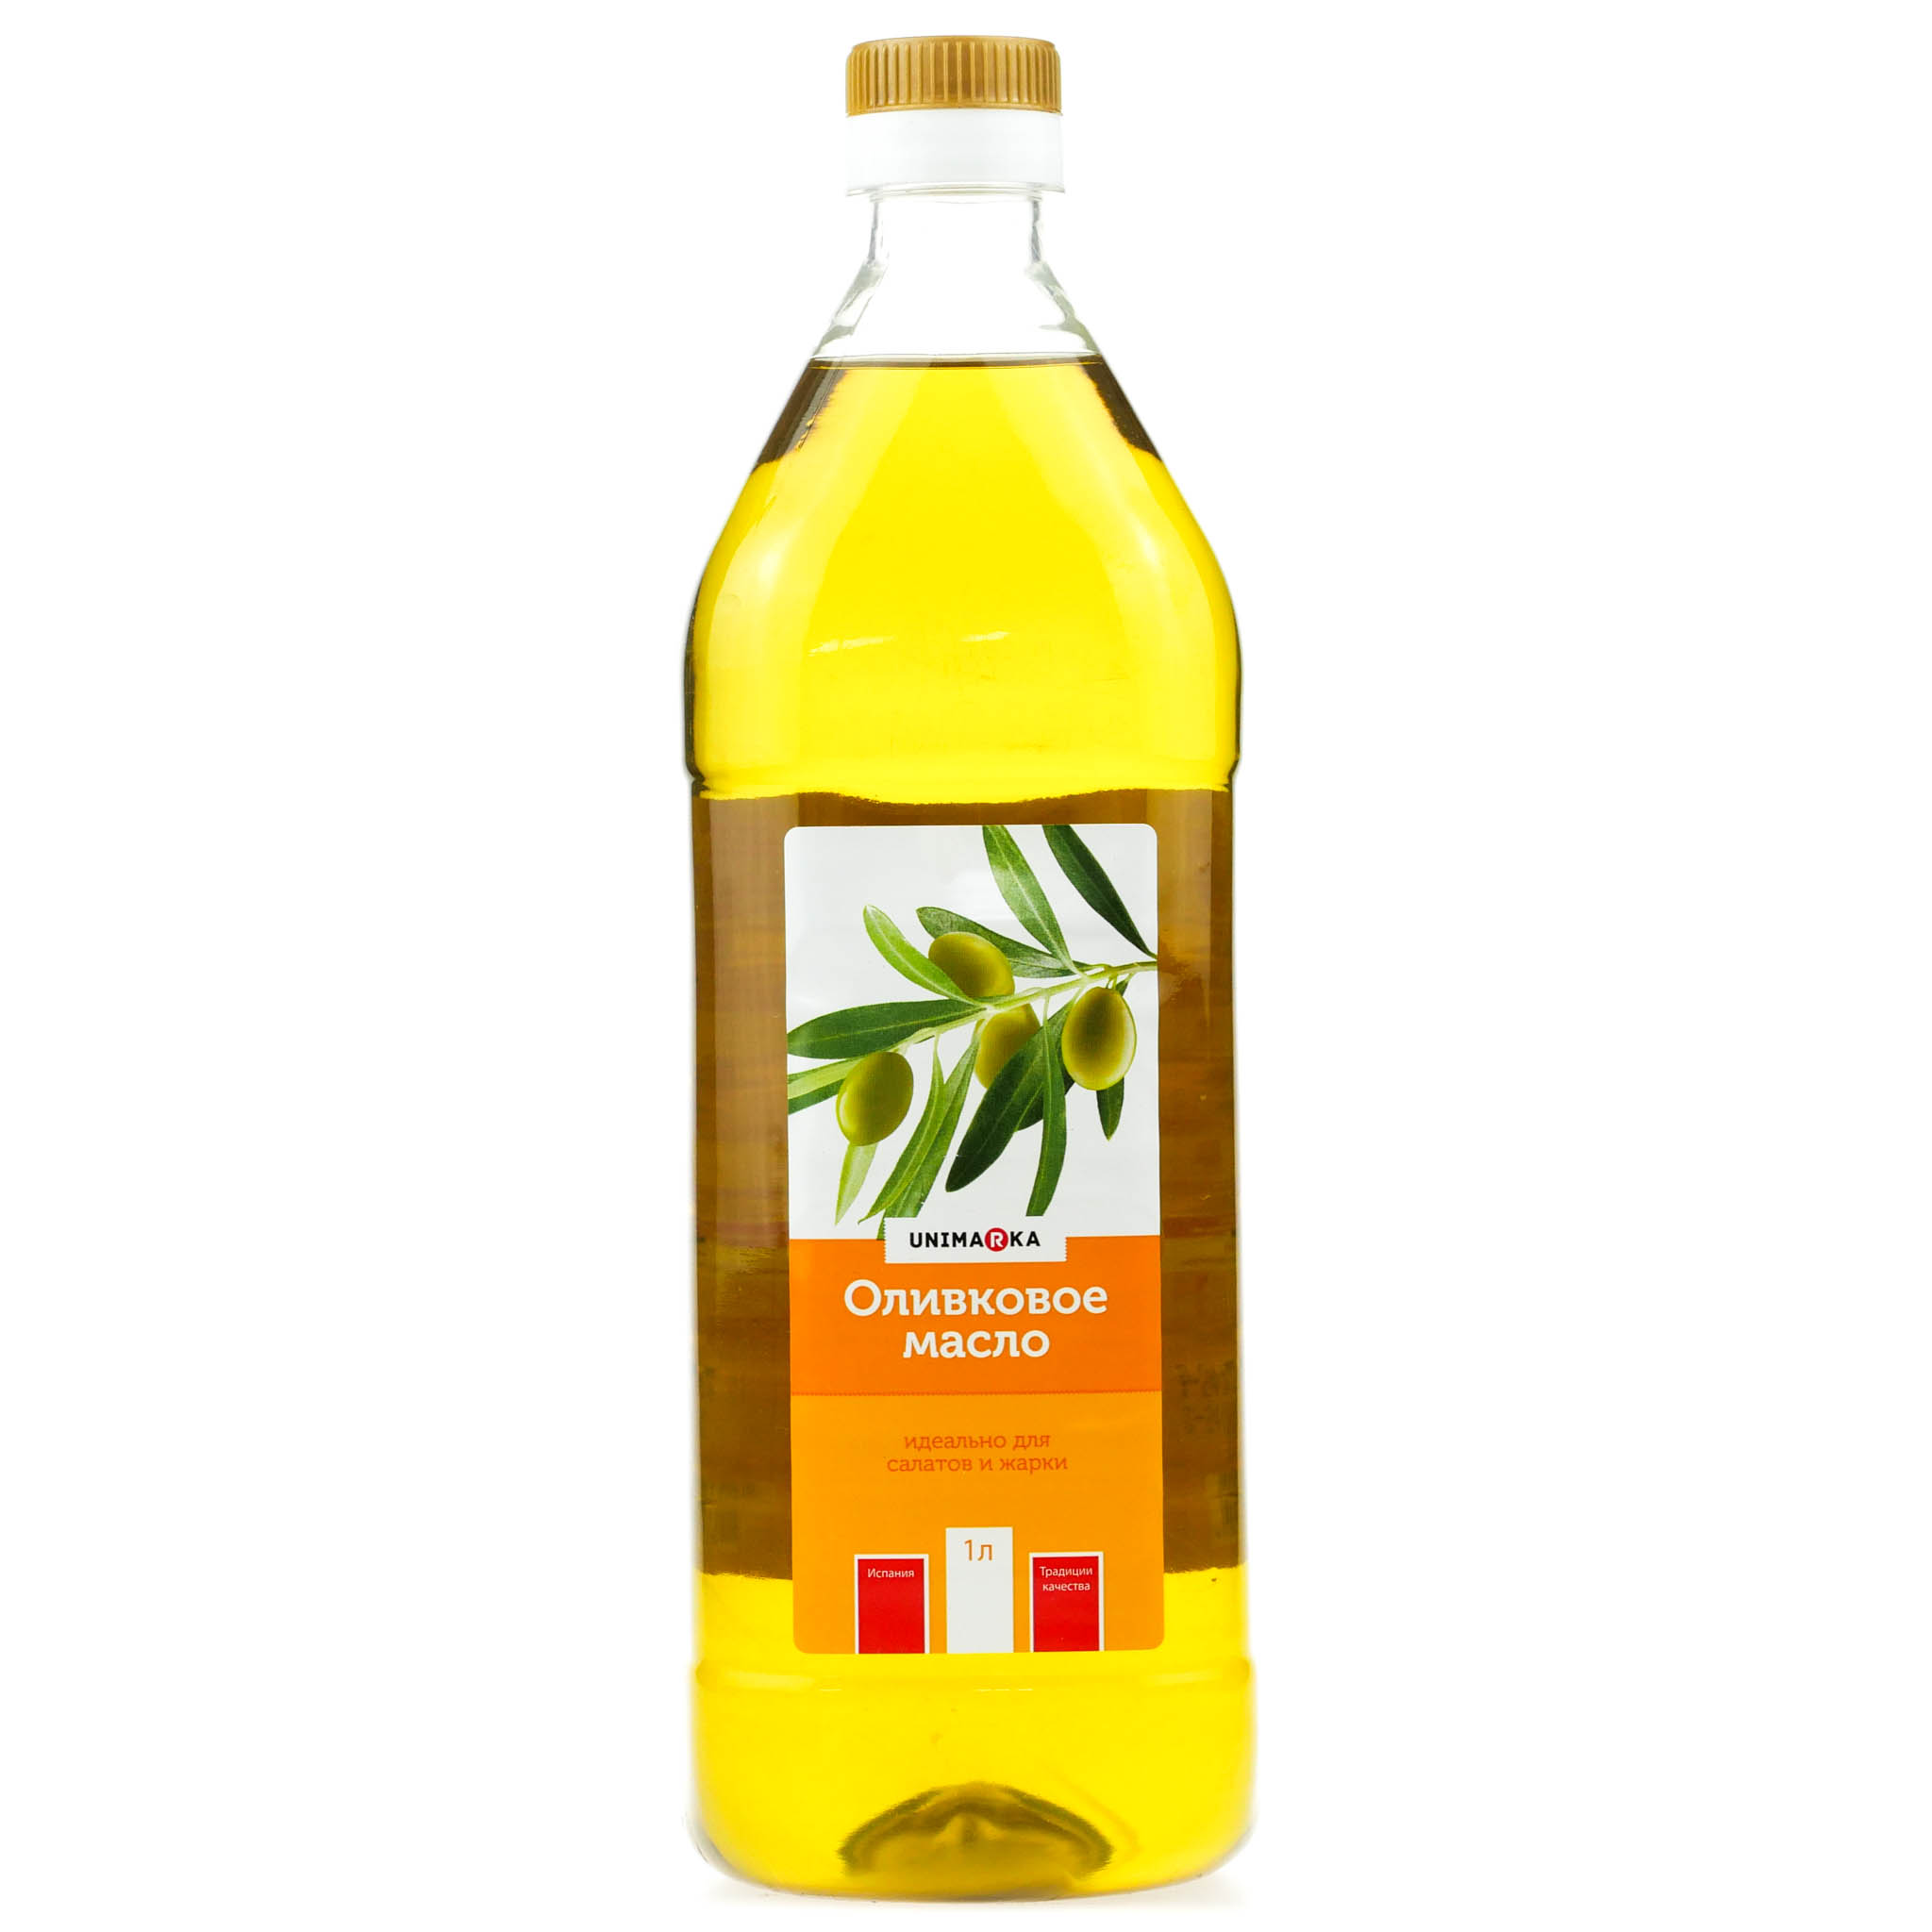 Рафинированное оливковое масло для салата. Оливковое масло botanika 1 л рафинированное. Оливковое масло рафинированное и нерафинированное. Масло рапсовое нерафинированное. Рафинированное масло оливковое для салата.